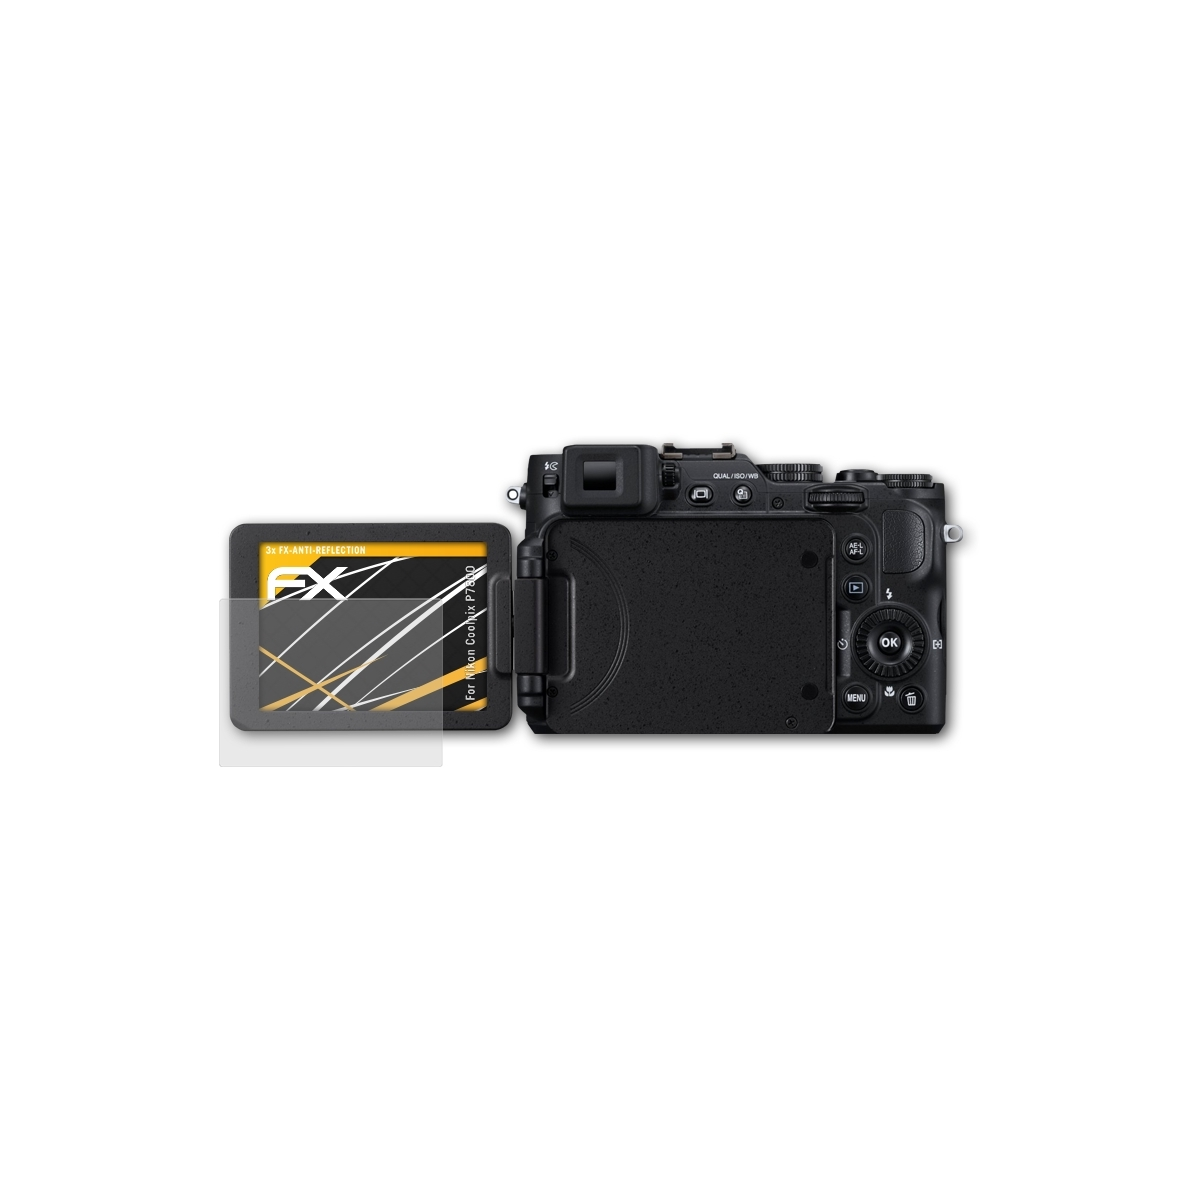 P7800) FX-Antireflex ATFOLIX Nikon Displayschutz(für Coolpix 3x